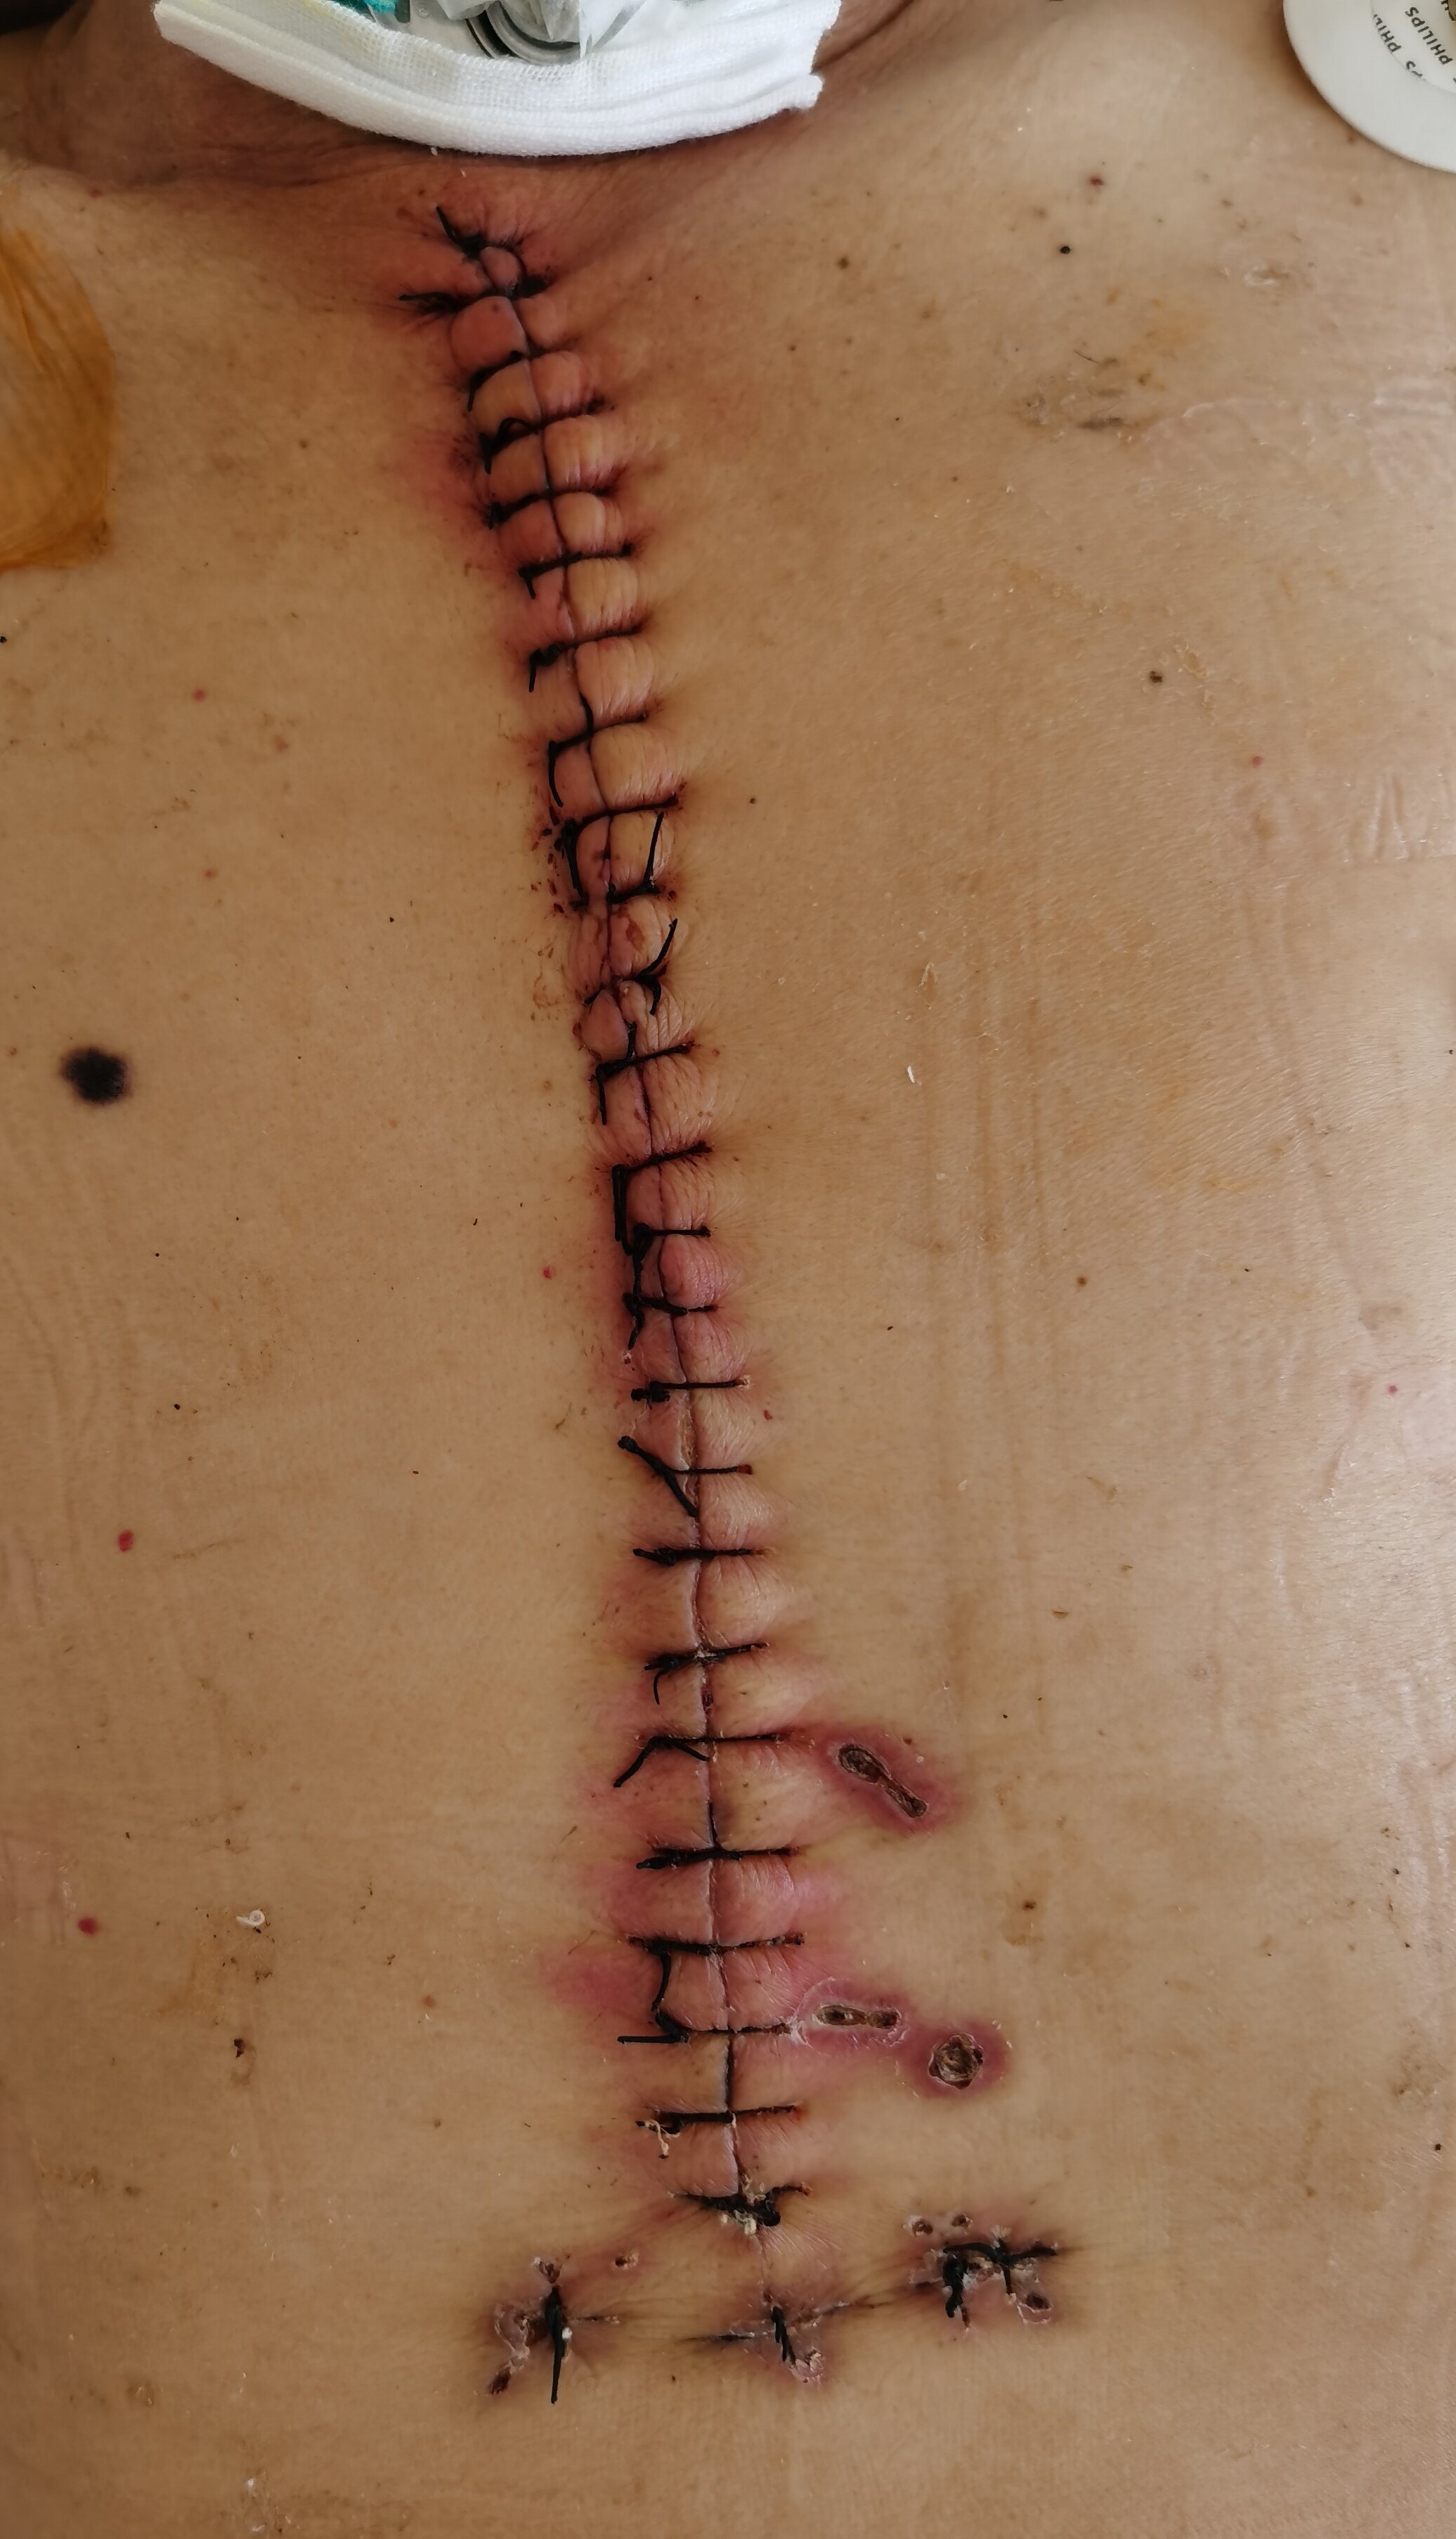 做了心脏手术的伤口图图片